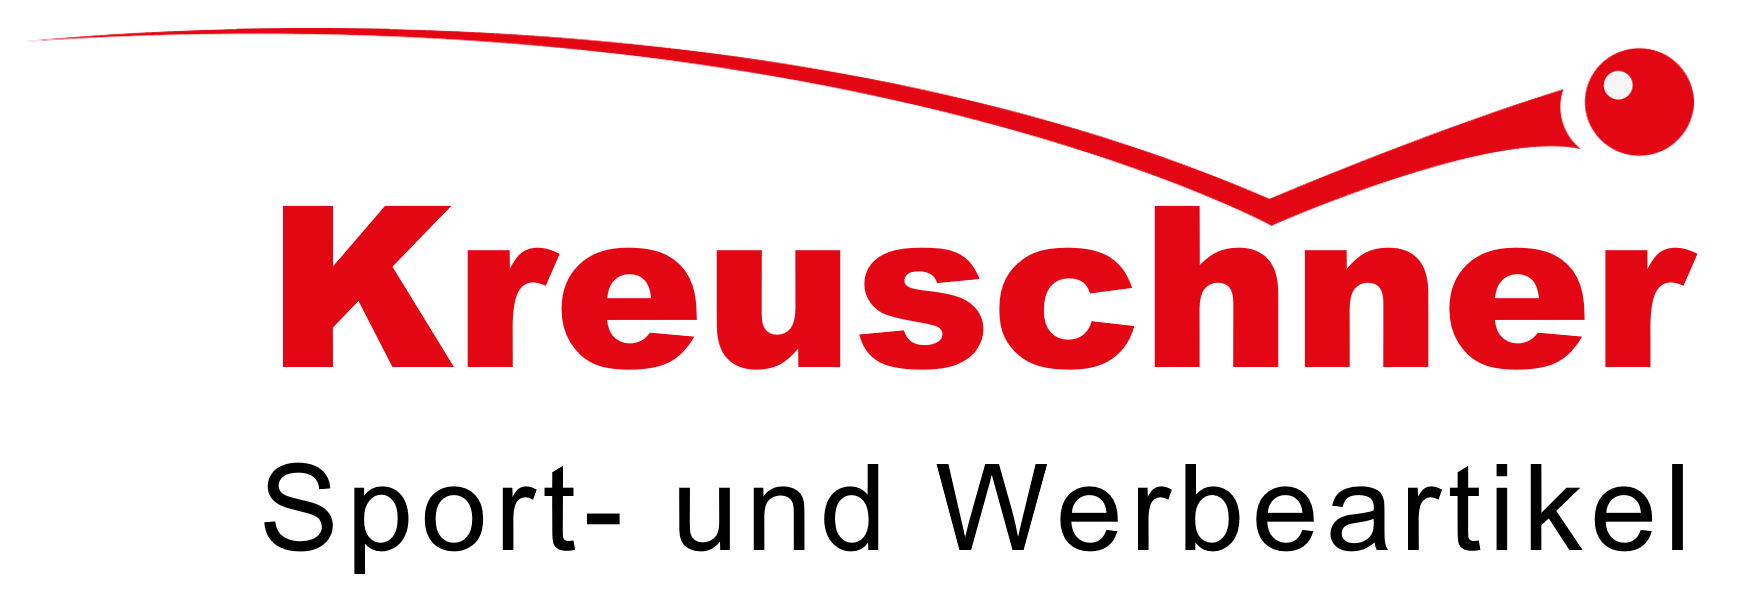 Kreuschner Sport- und Werbeartikel e.K.